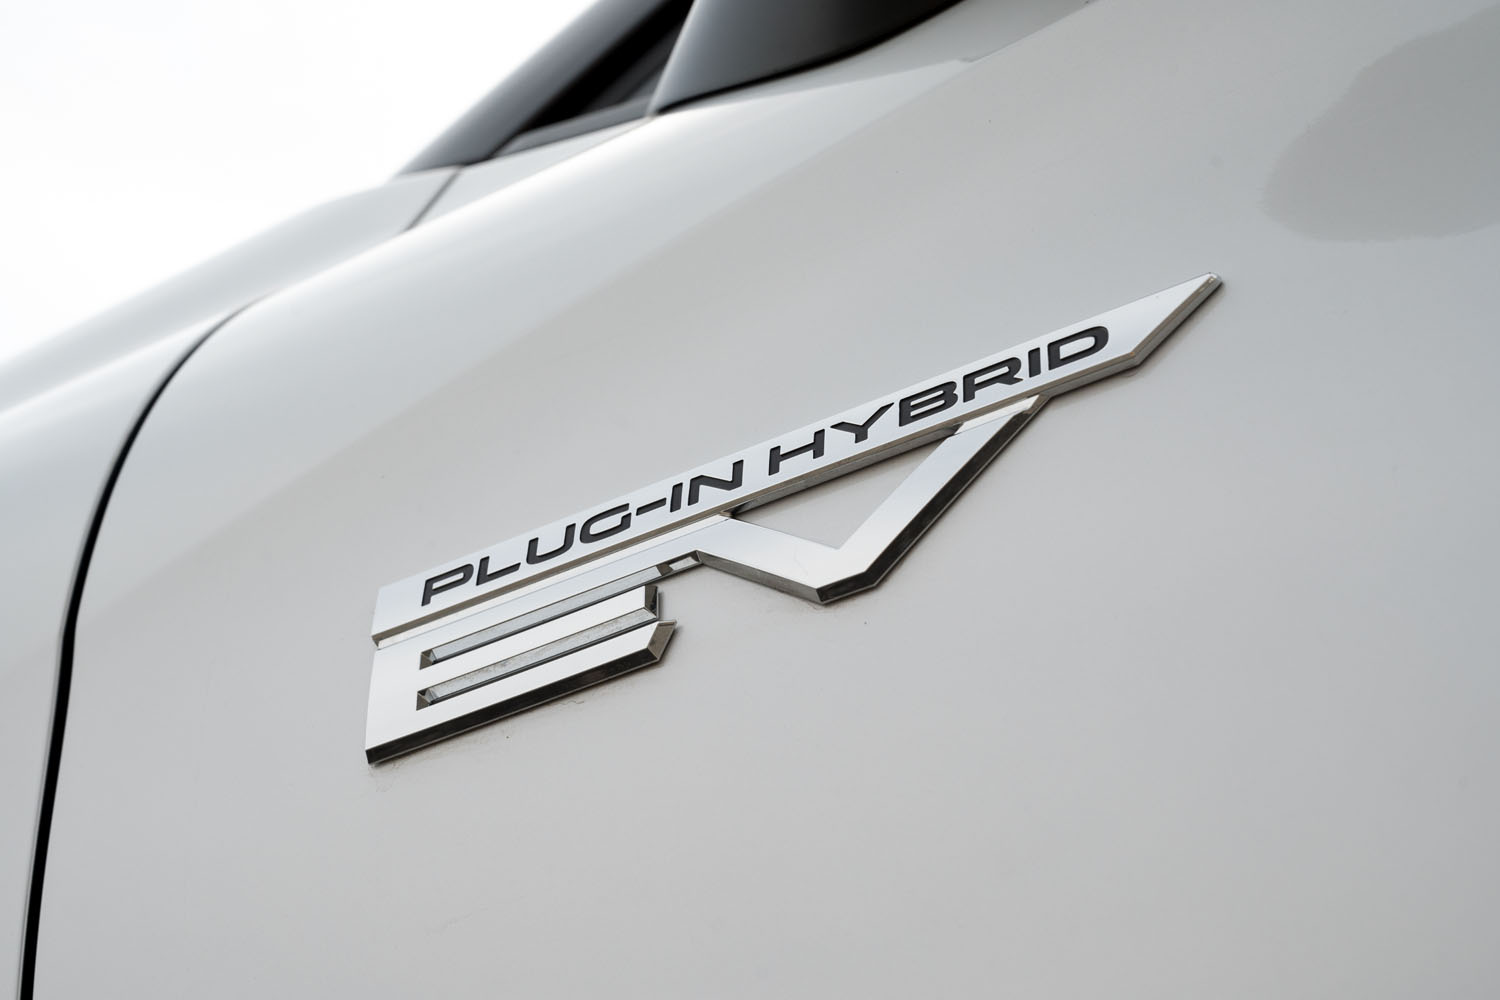 「アウトランダーPHEV」の登場は2012年12月のこと（発売は翌年1月）。新型にはガソリン車の設定がなく、差別化の必要がなくなったためか、正式な車名は単に「アウトランダー」となった。